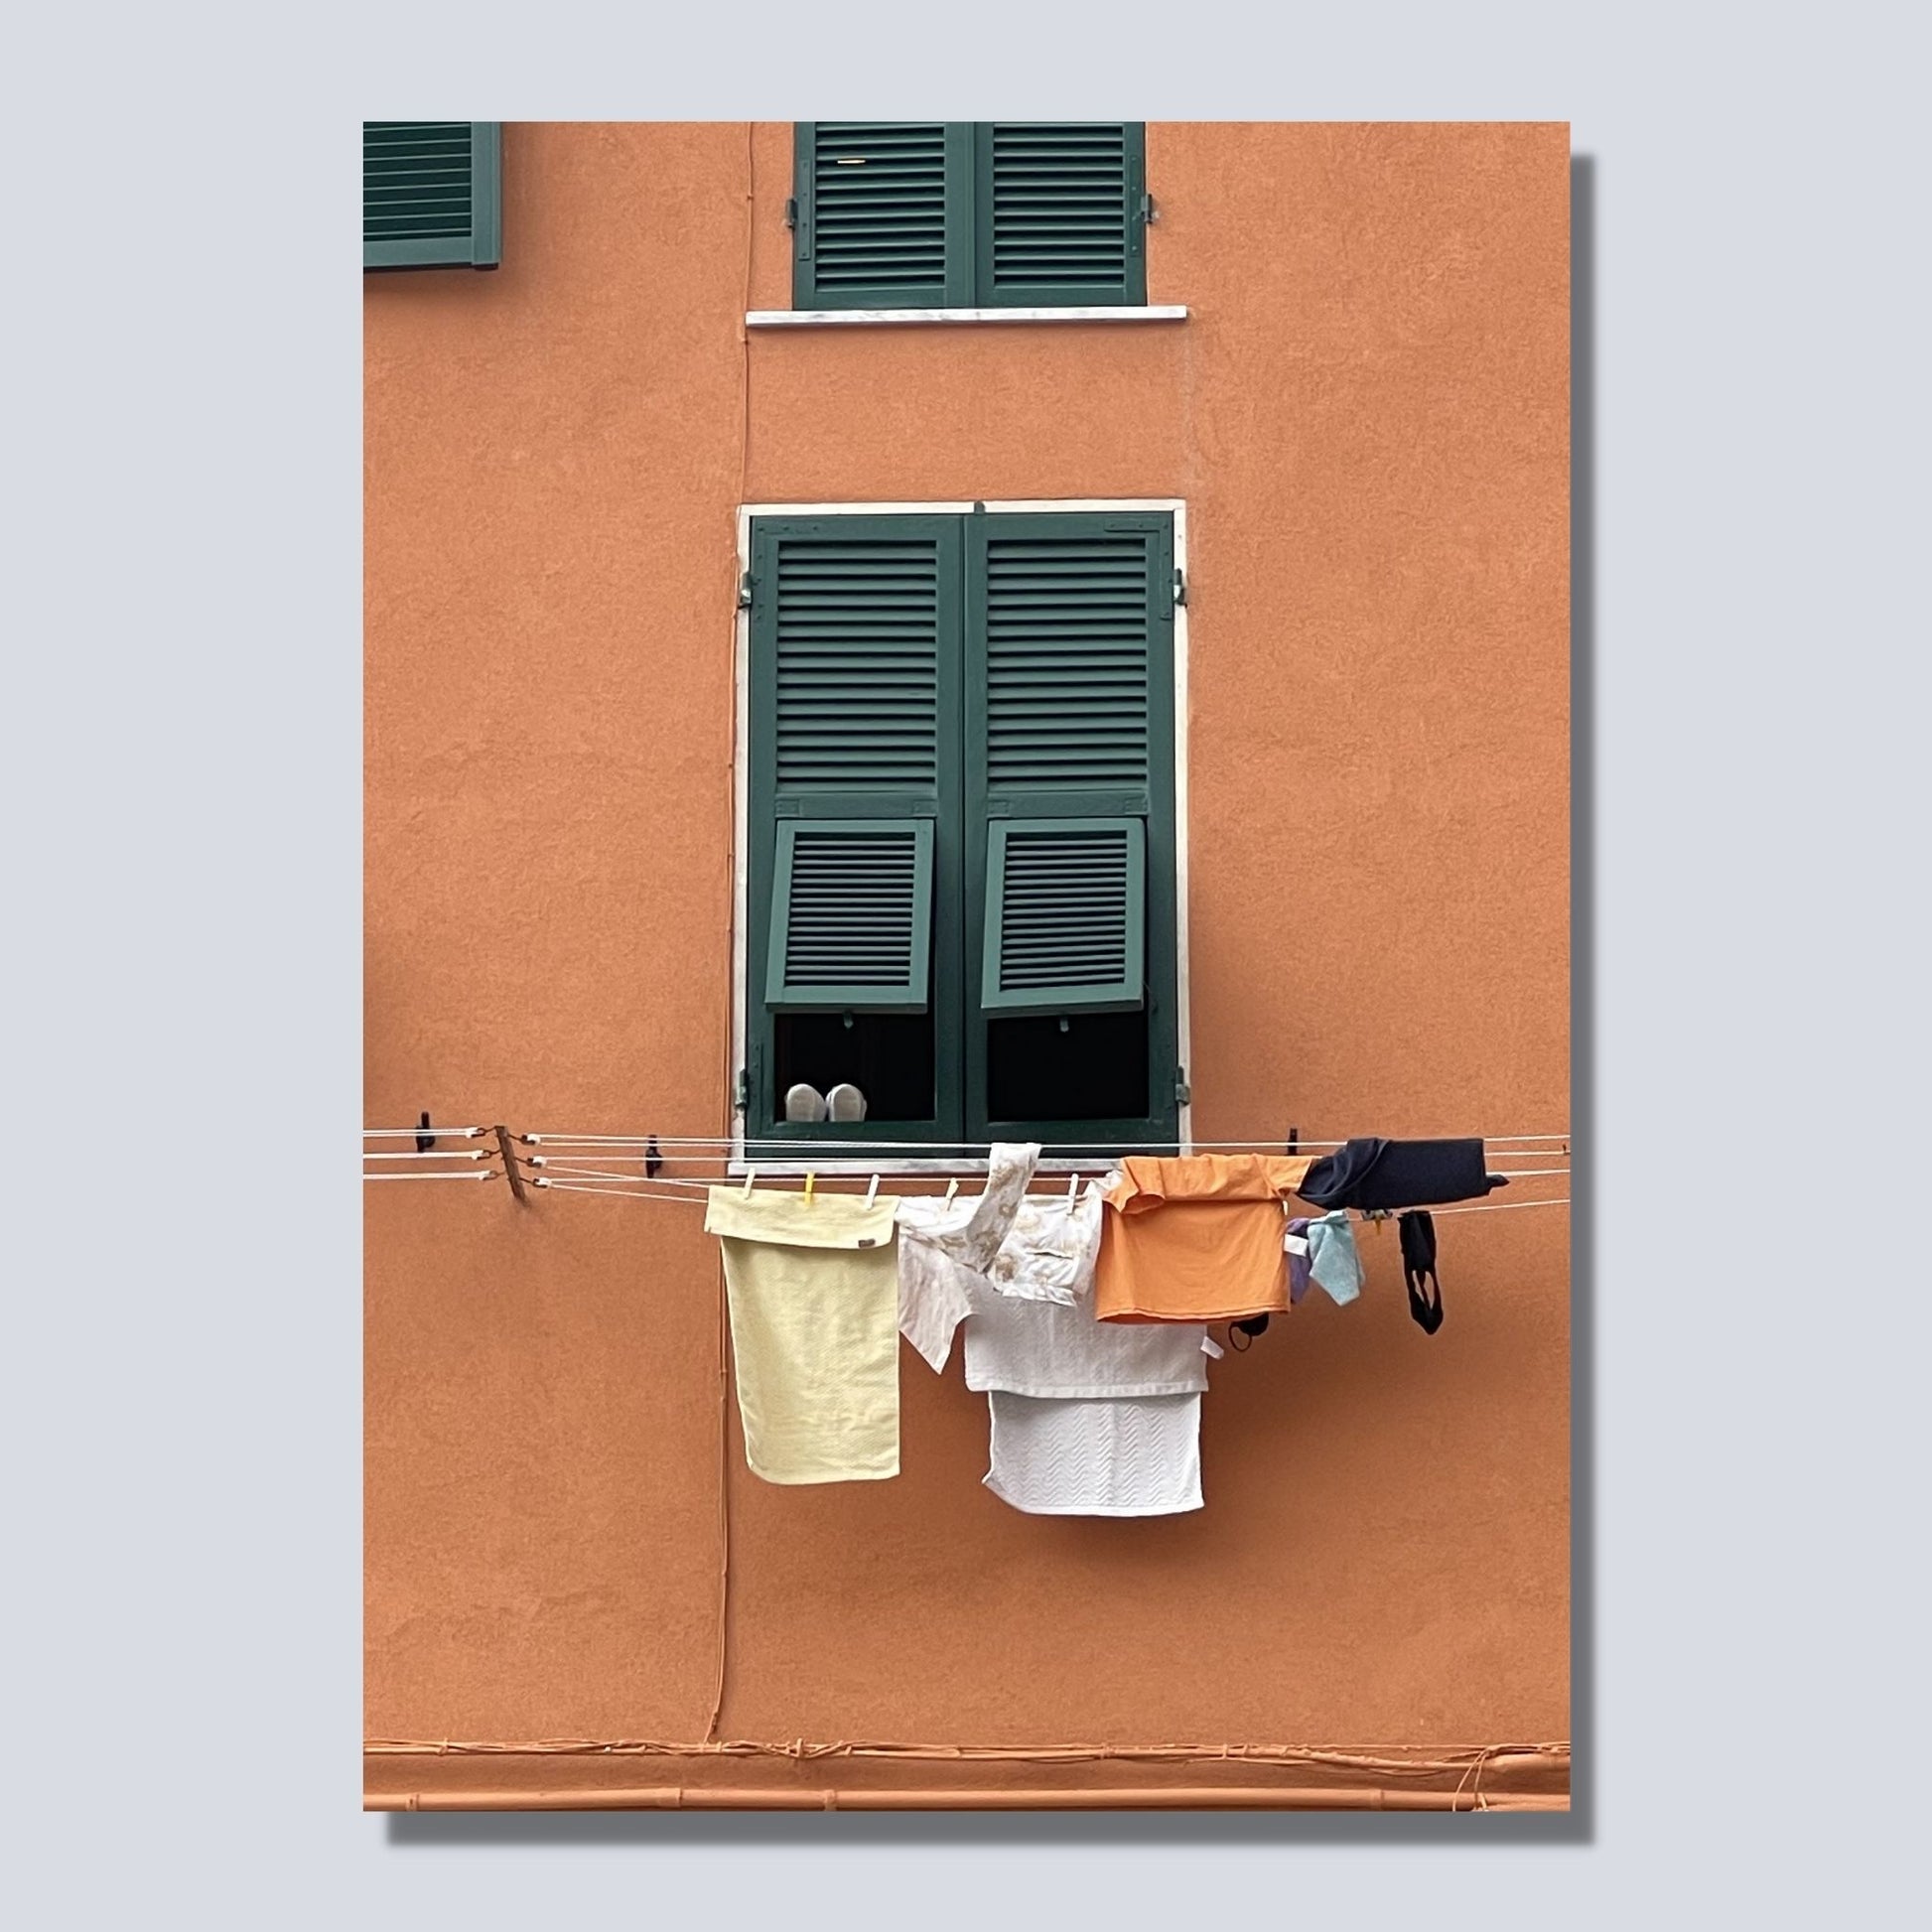 Plakat viser motiv er fra Riomaggiore, en av de fem byene i Cinque Terre ved Liguriakysten i Italia. Riomaggiore ligger lengst østover av de 5 byene. Her er det som i alle Italienske byer, klestørk på kryss og tvers på alle husfasader. På plakaten er det en oransje fasadevegg med et vindu med grønne skodder. Under vinduet henger dagens klesvask til tørk.  Bilde av motiv på lerret.